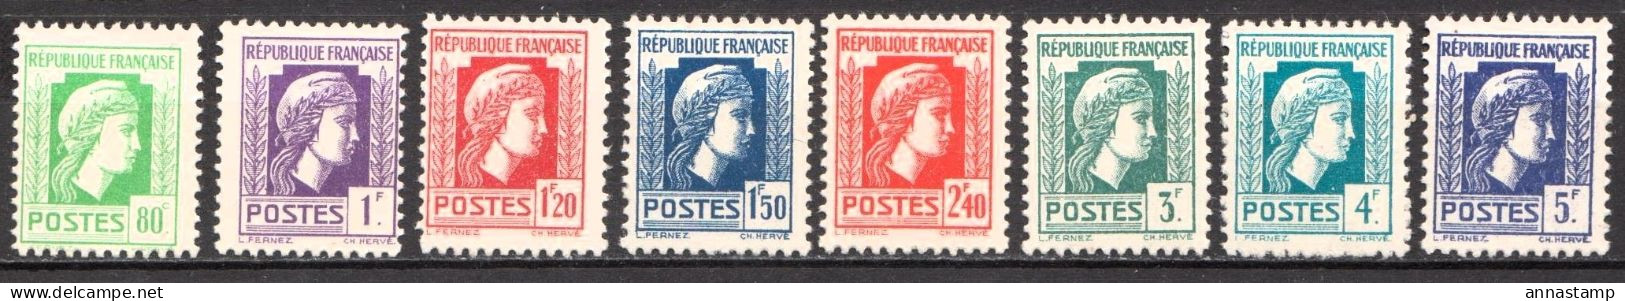 France MNH Stamps - Libération